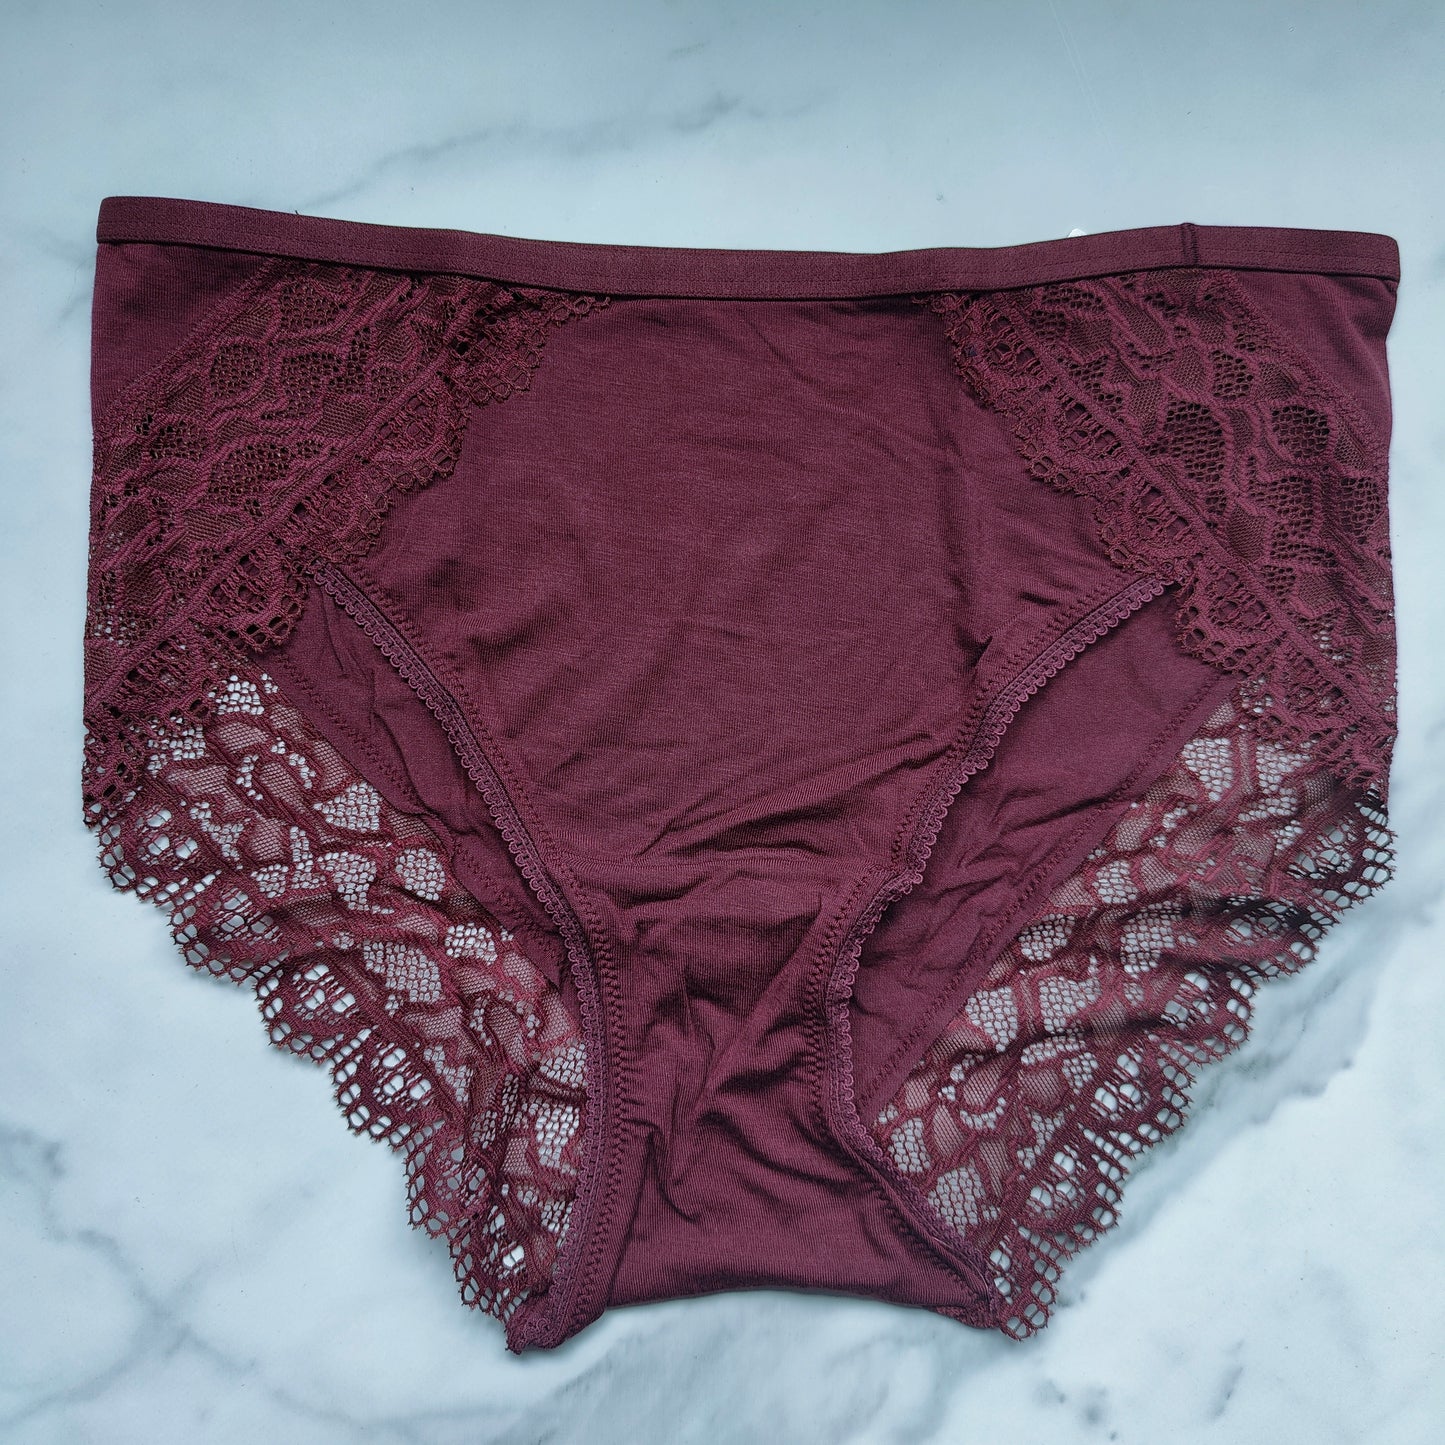 Embraceable Super Soft Enchanting Lace High-Leg Panty – Goob's